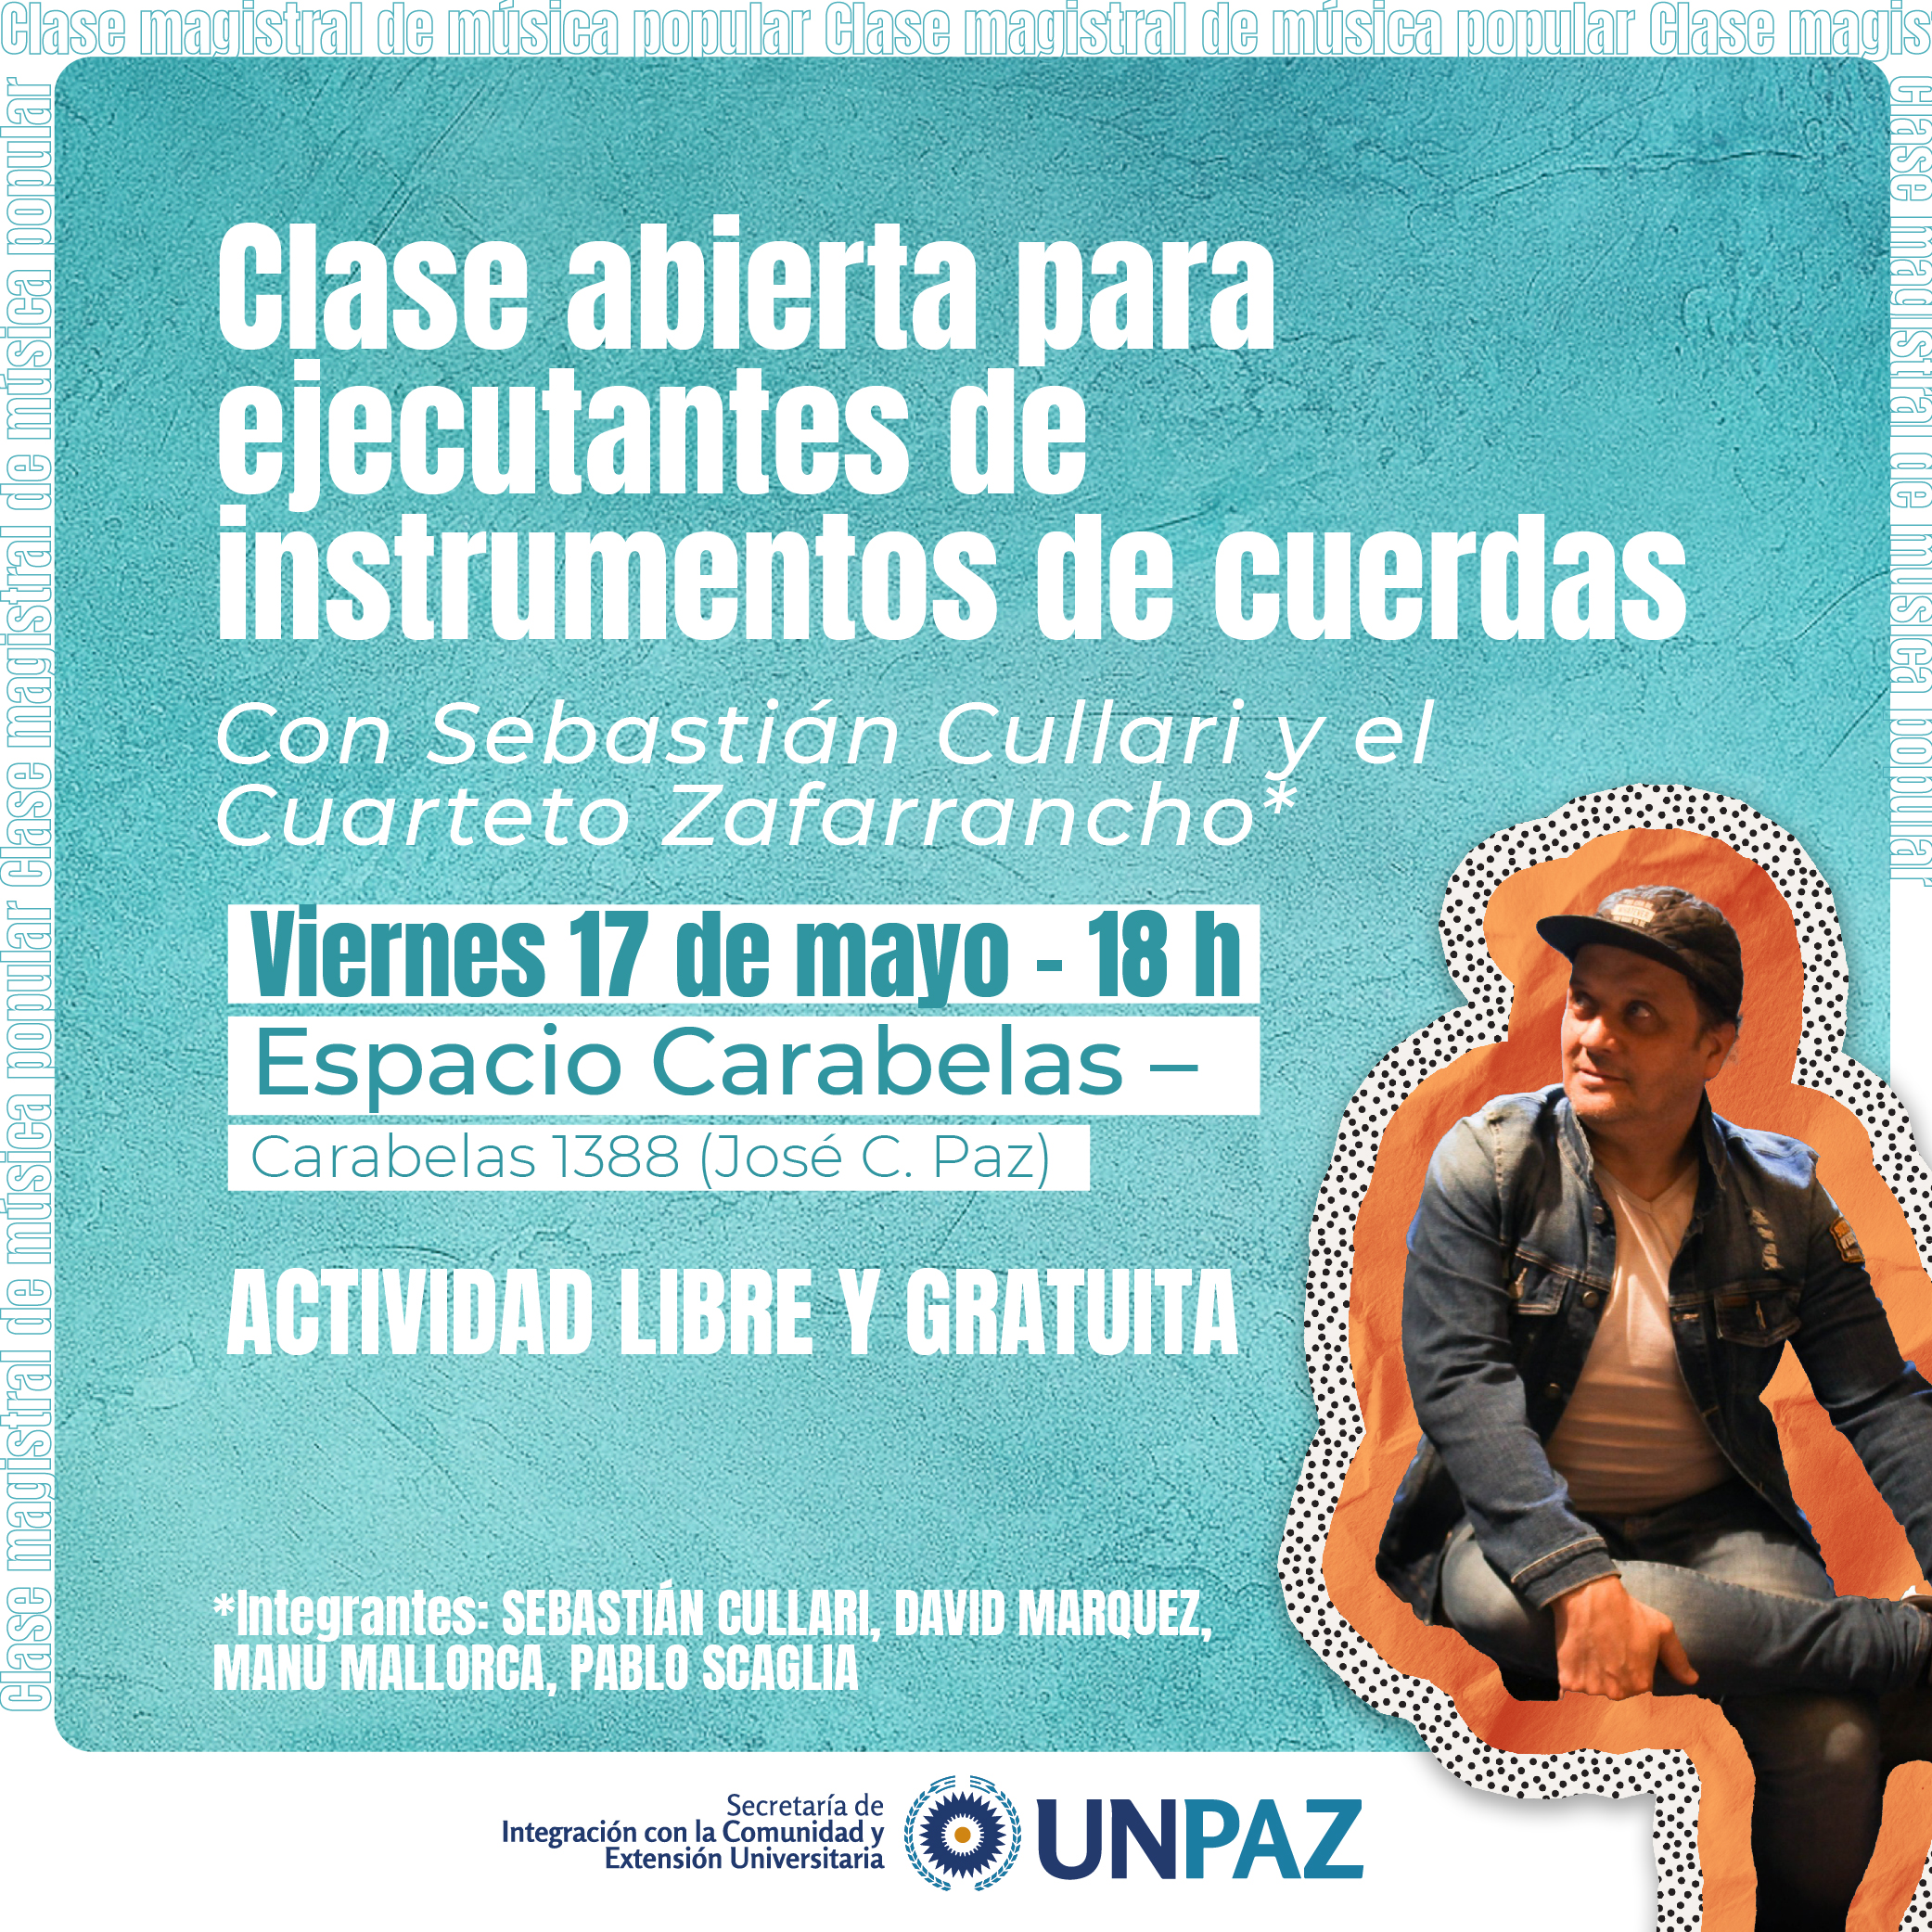 Clase abierta para ejecutantes de instrumentos de cuerdas - UNPAZ